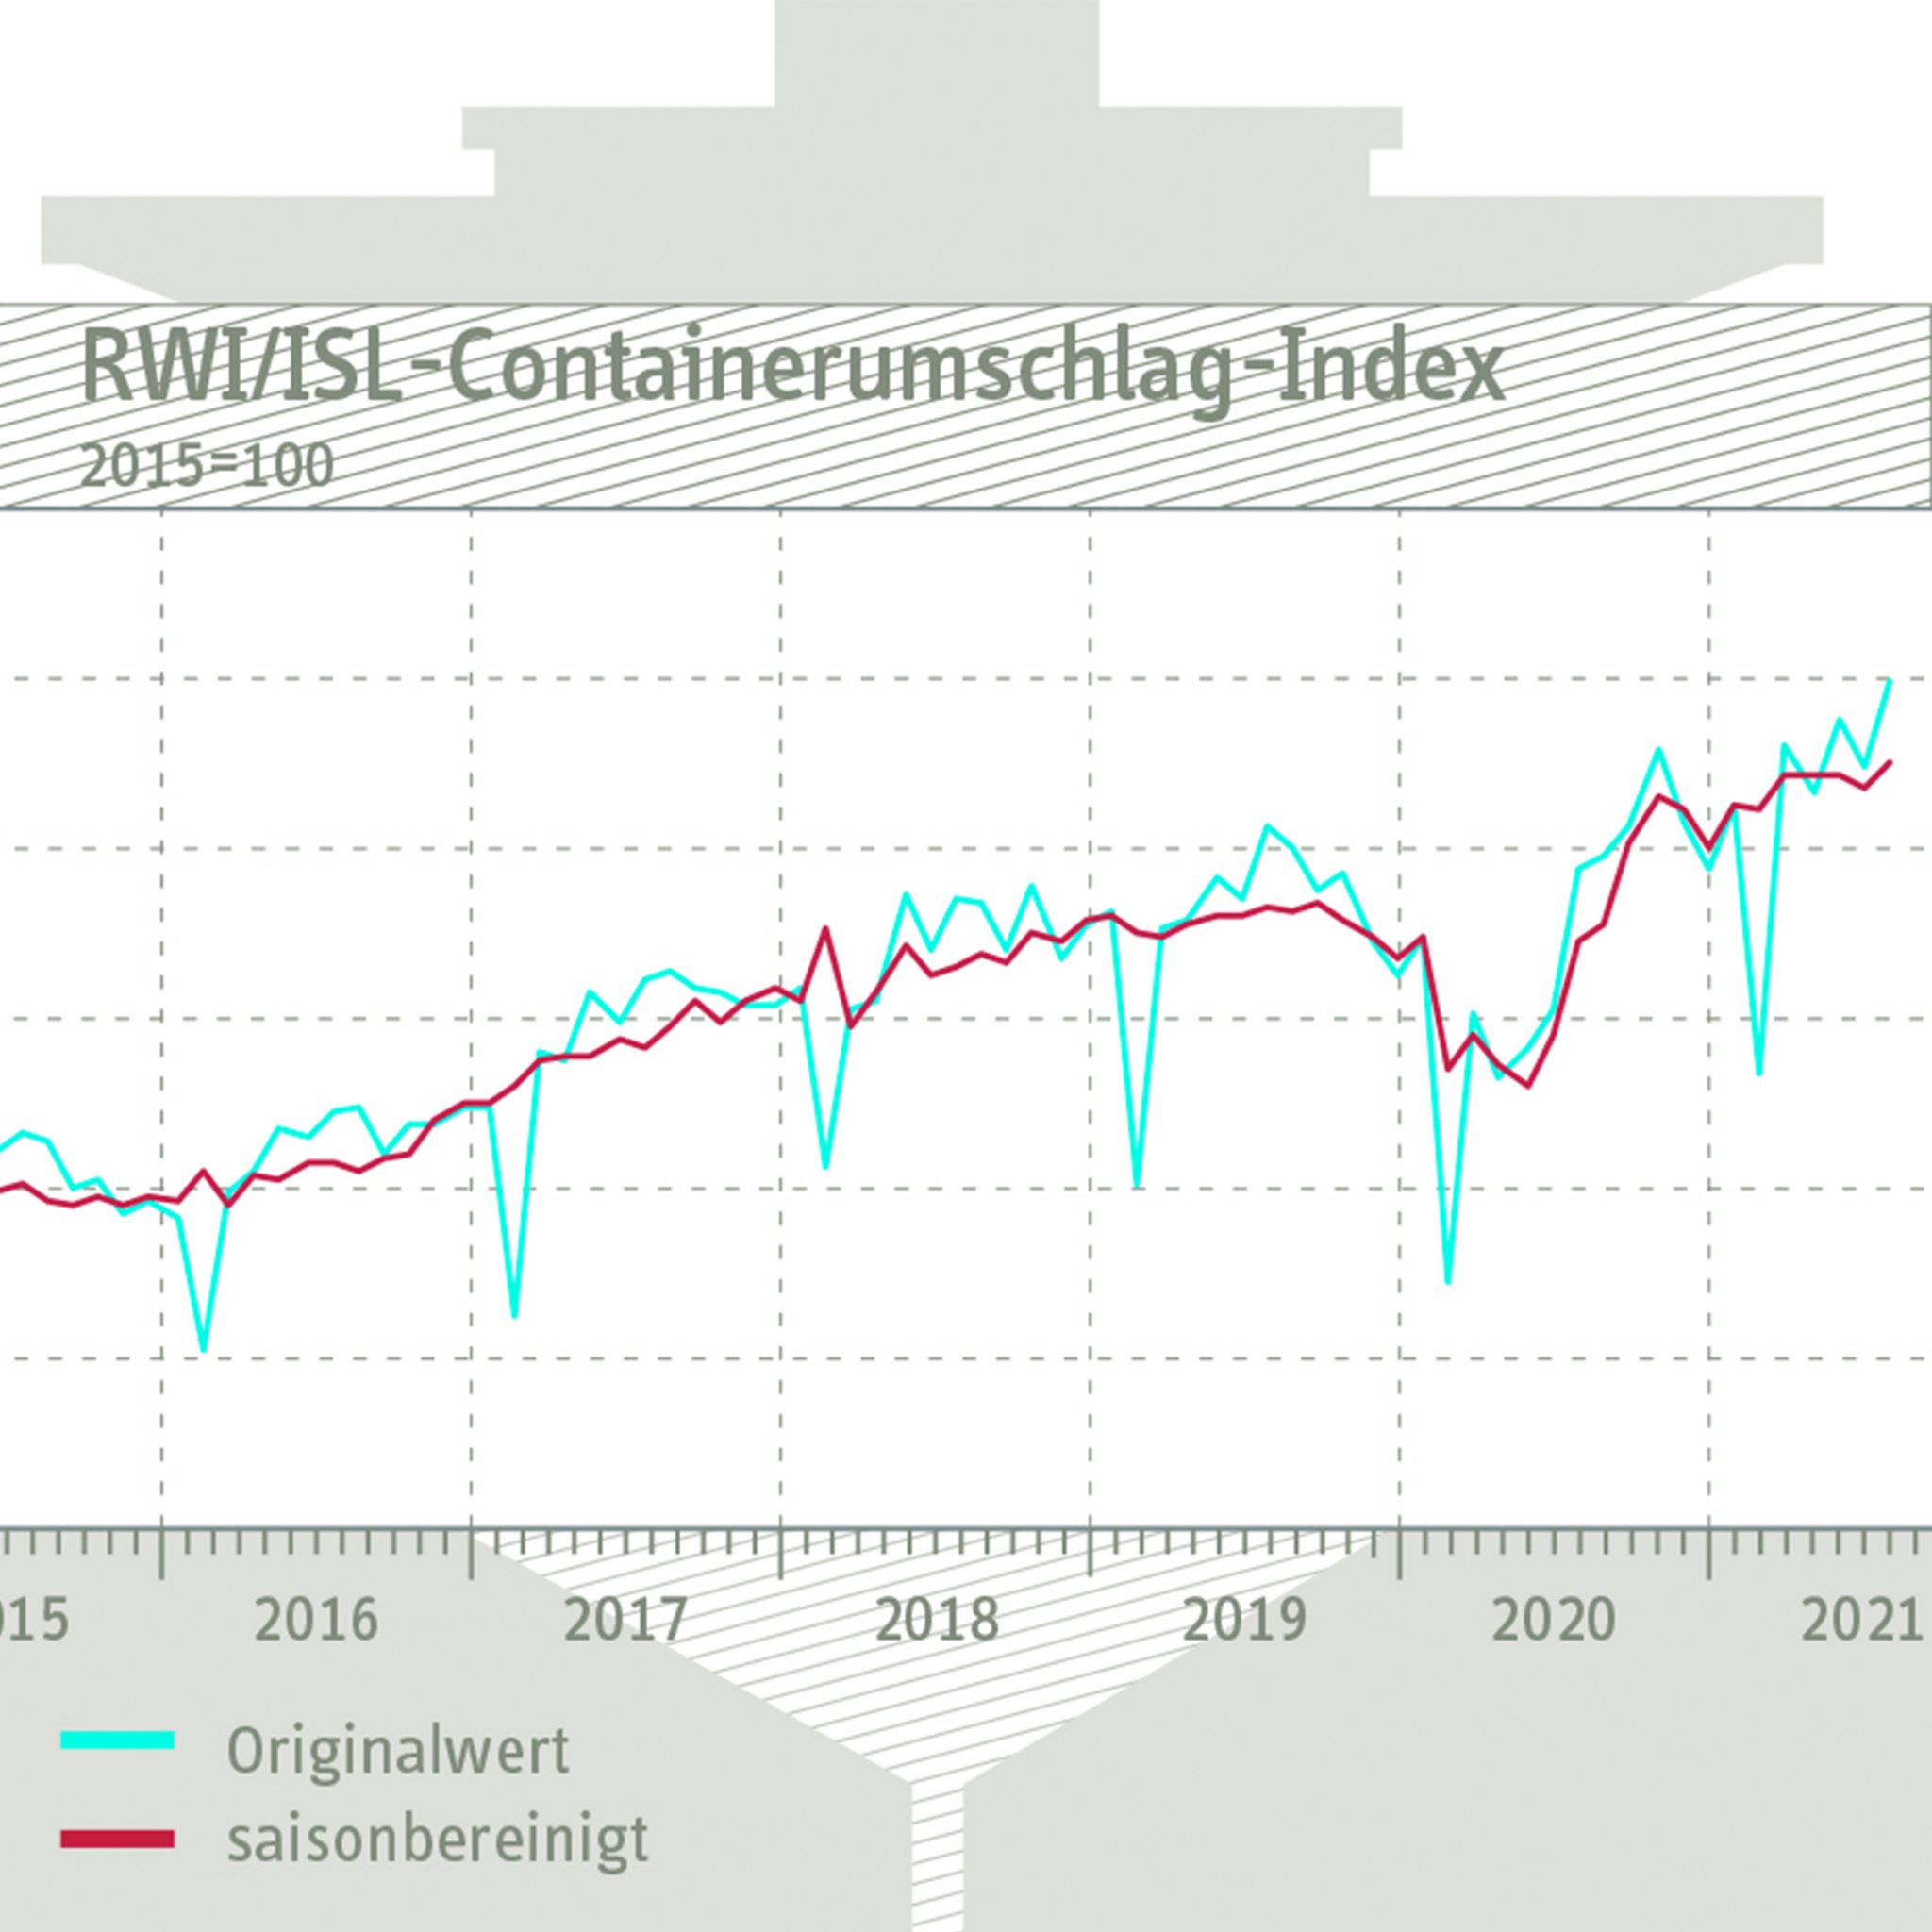 Voor de index voor de wereldwijde containeroverslag verwerken de Duitsers de overslagcijfers van containers in 91 internationale havens.